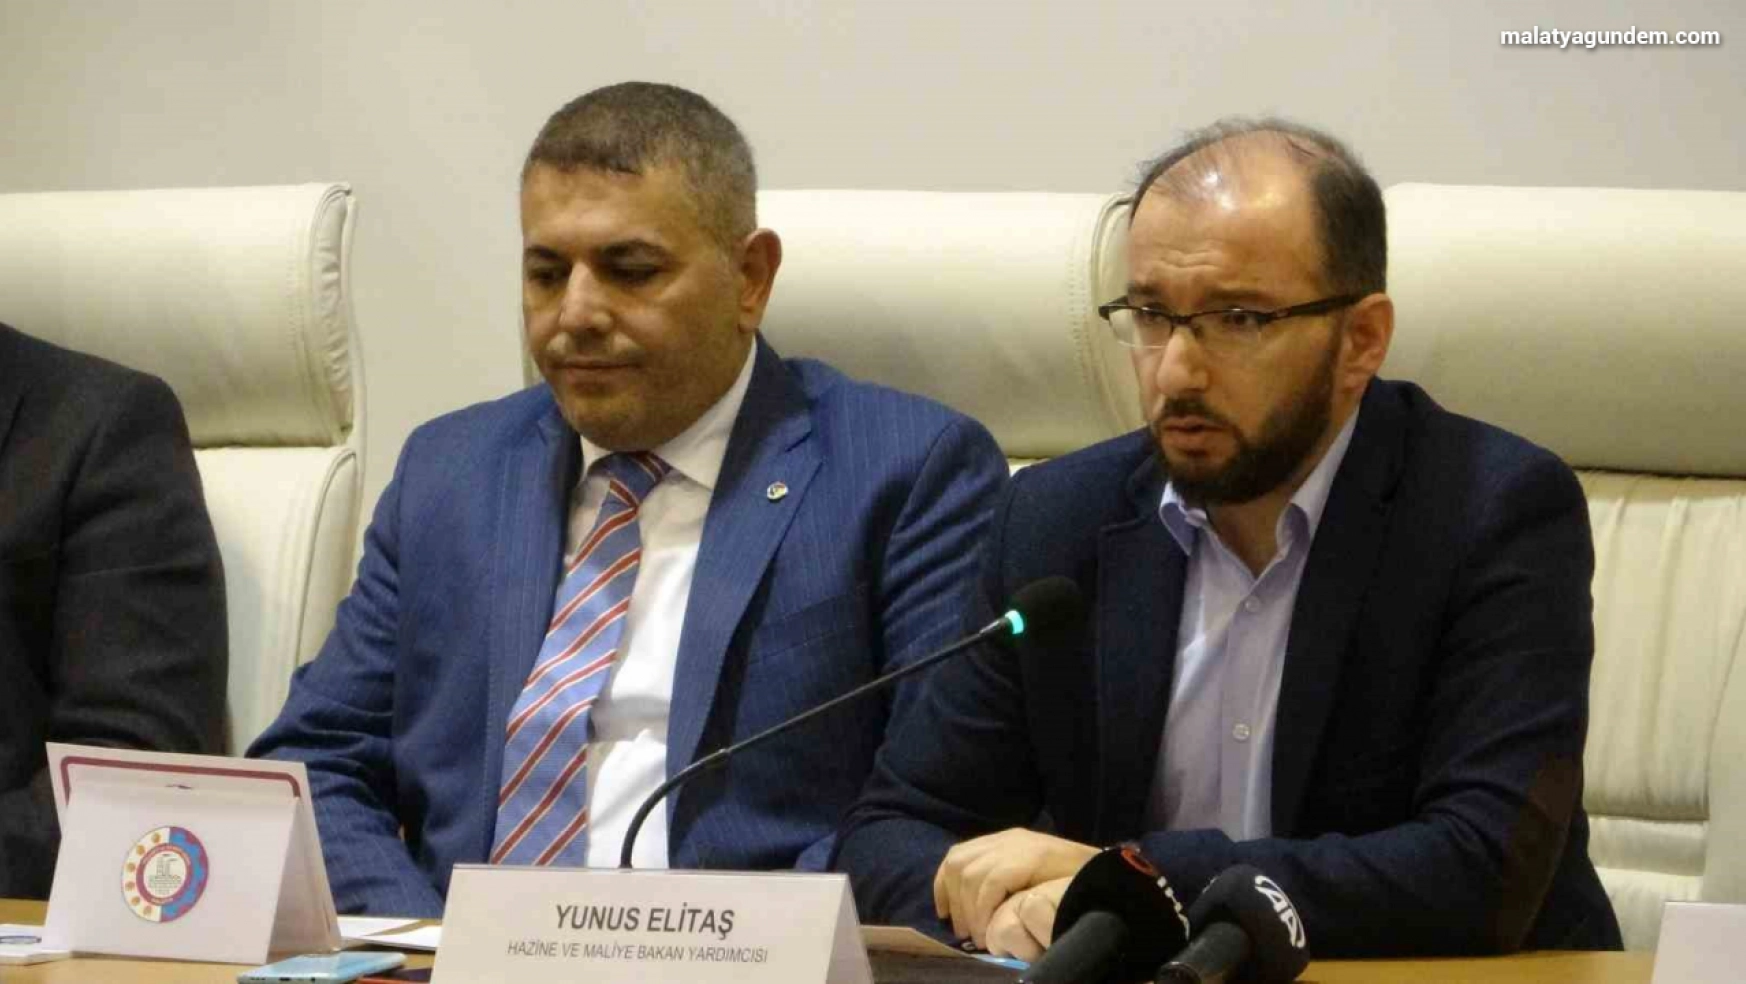 Bakan Yardımcısı Elitaş, Malatya'da istişare toplantısına katıldı